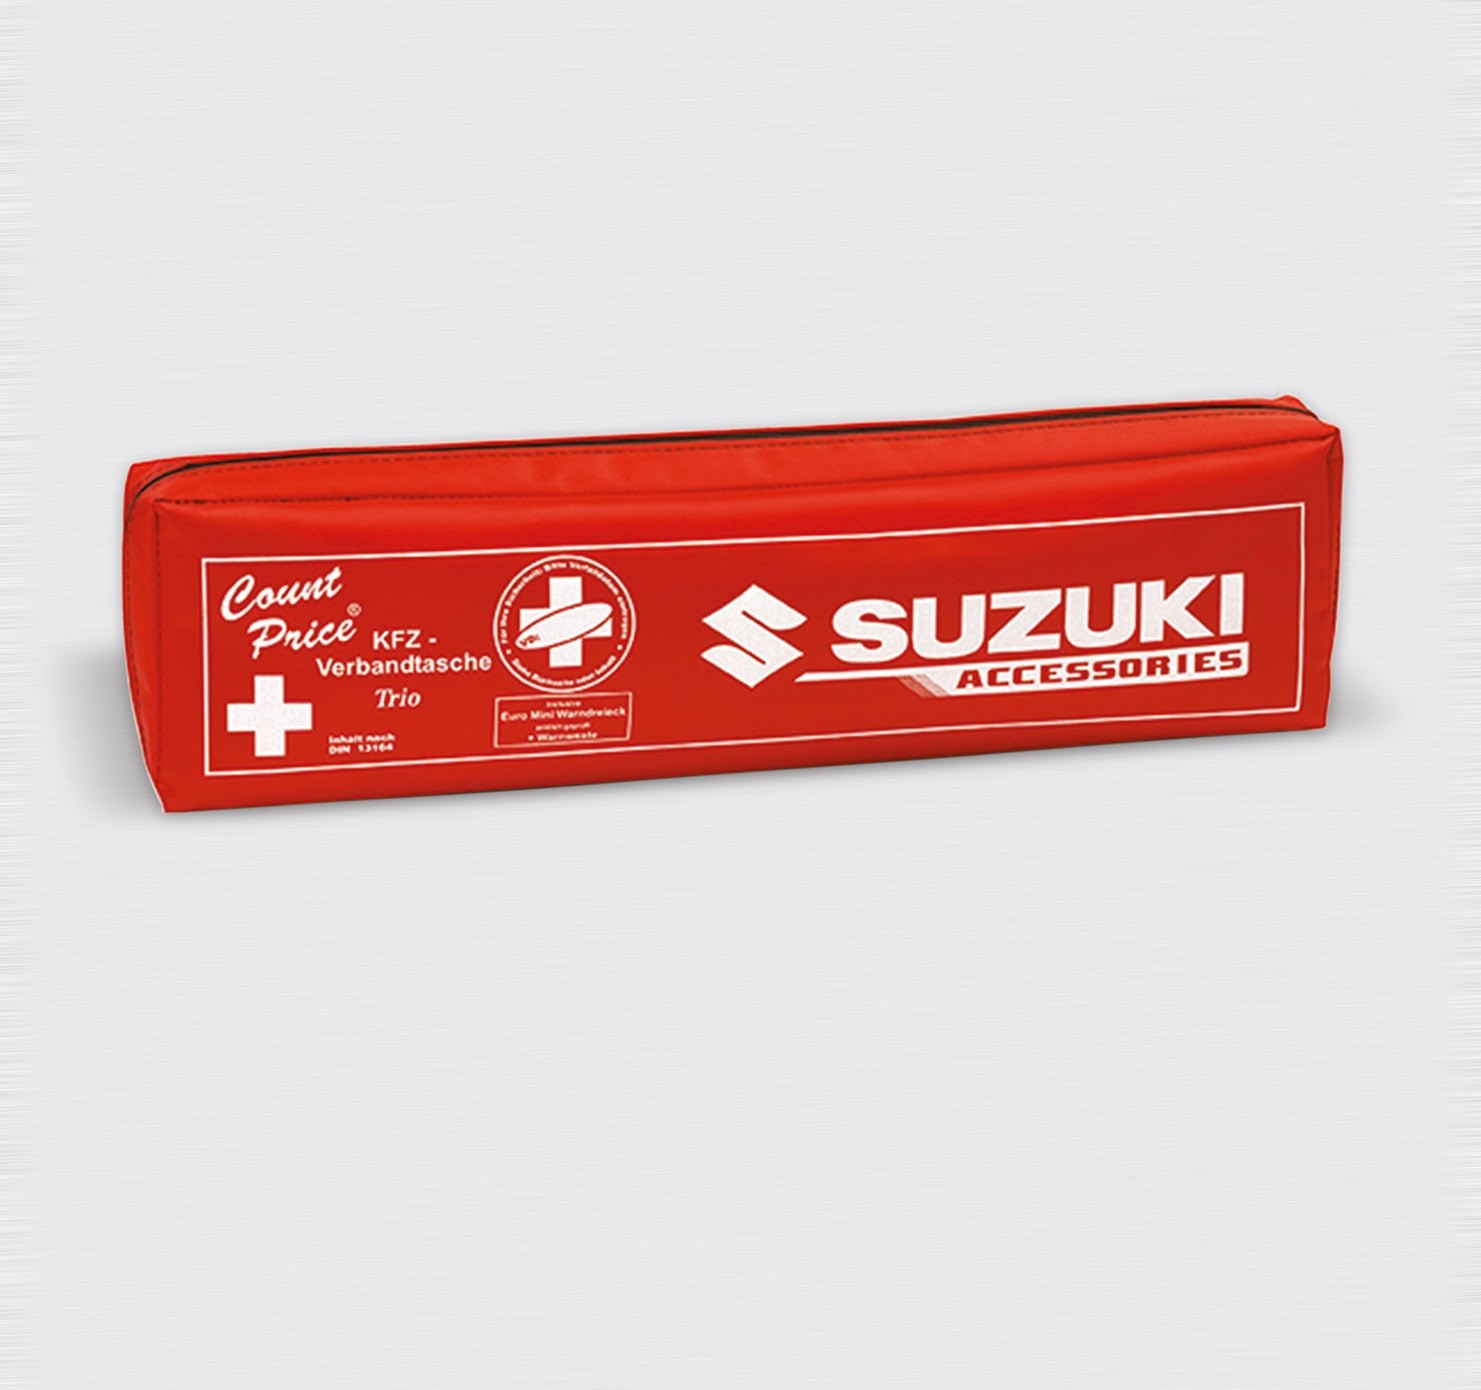 Wimmer und Merkel Shop - Suzuki Erste-Hilfe-Set inkl. Warnweste